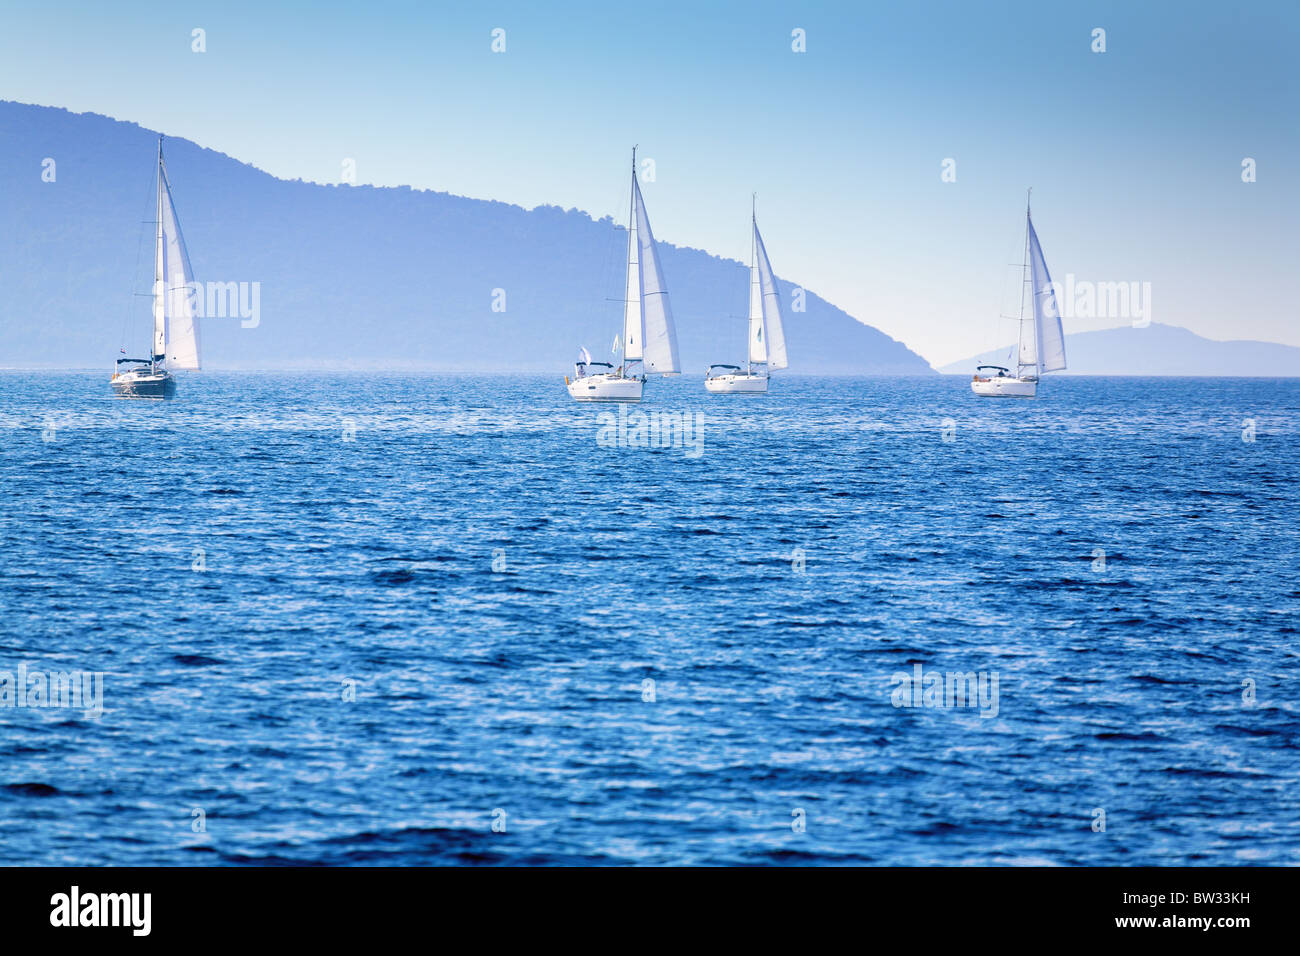 Sailing in Adriatic Sea Stock Photo